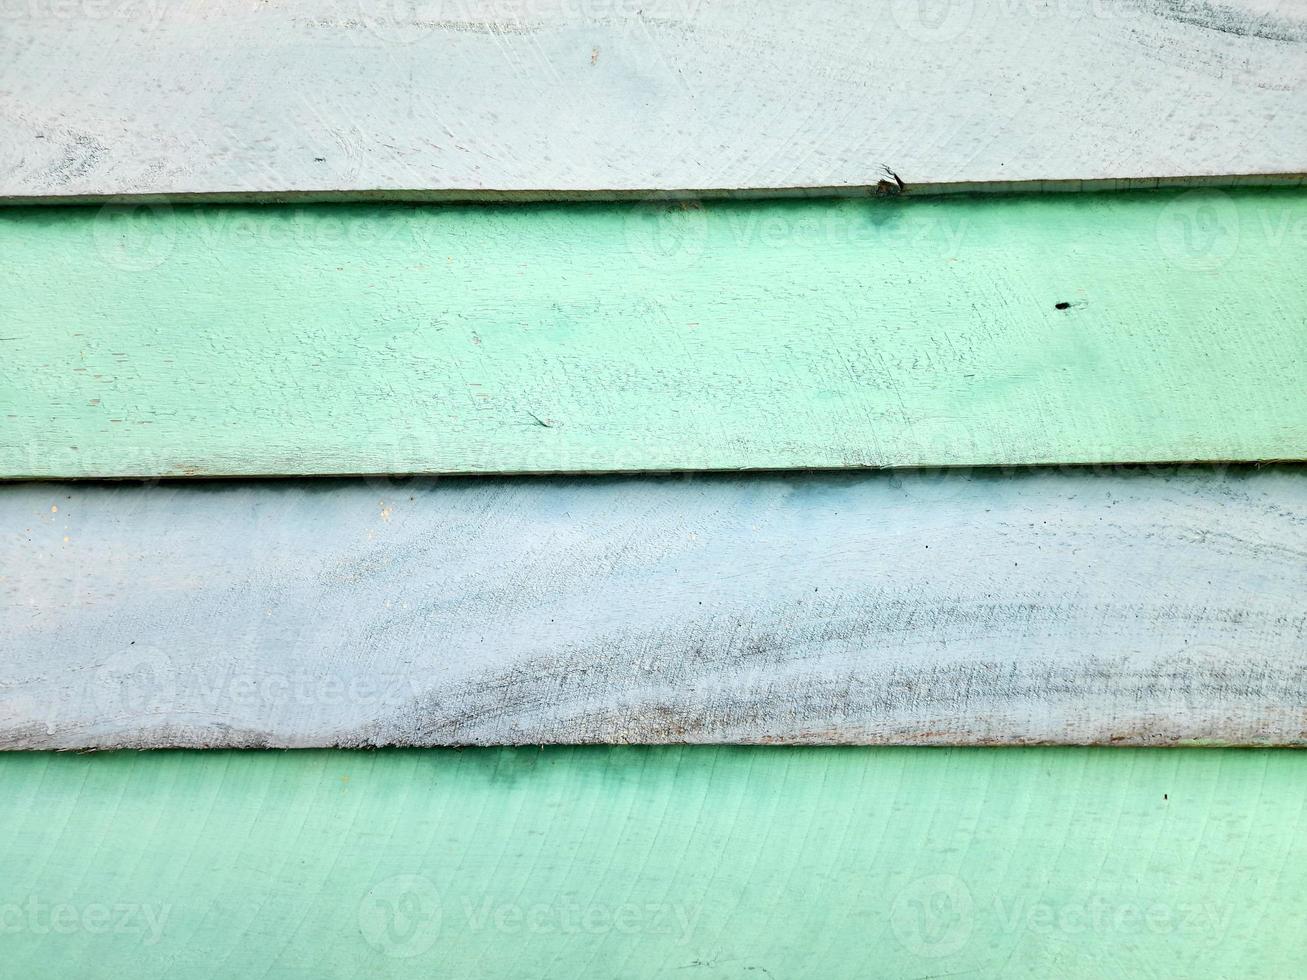 planches de bois colorées. planches de bois soigneusement disposées. photo